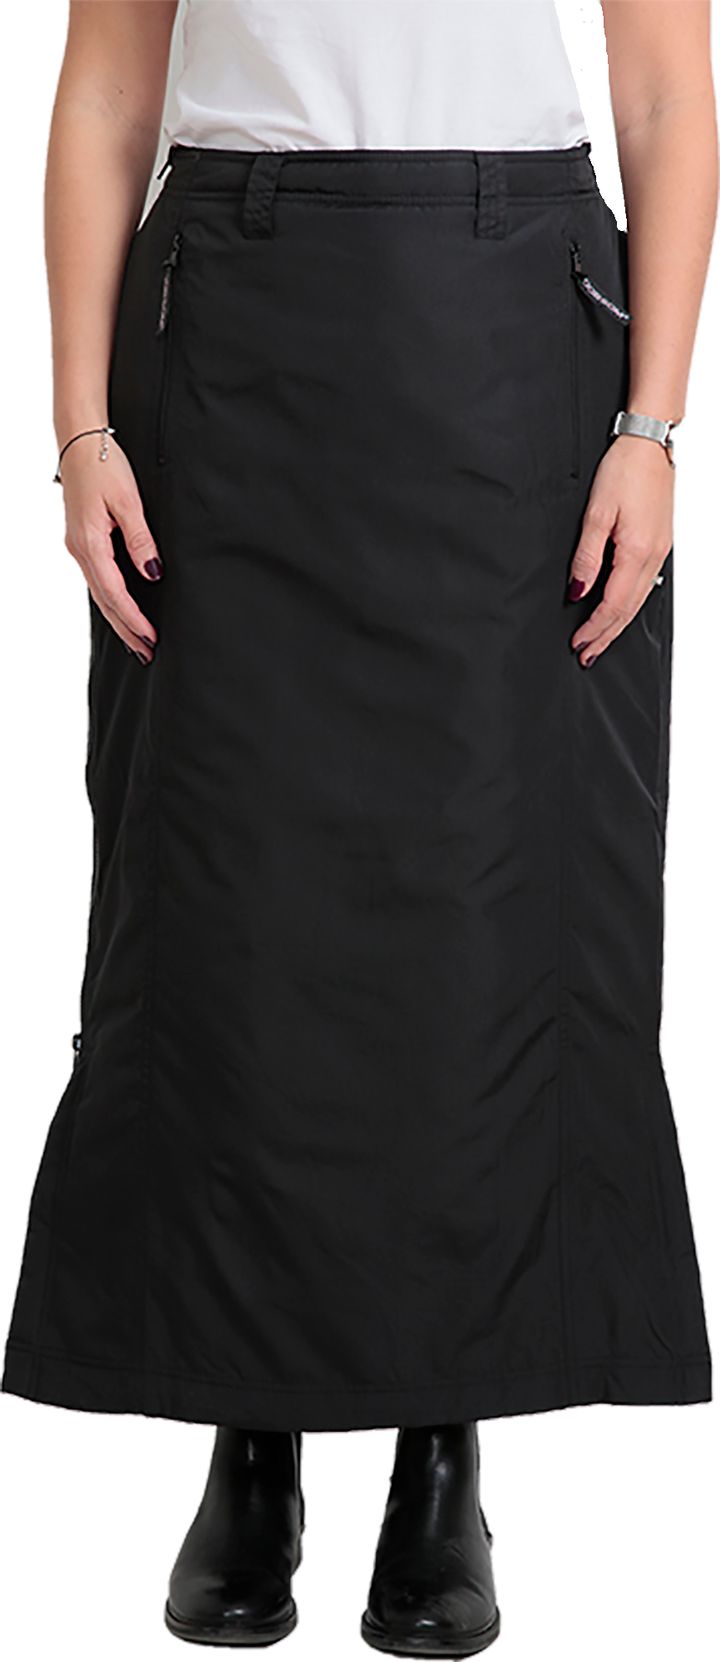 Comfort Skirt Black Dobsom